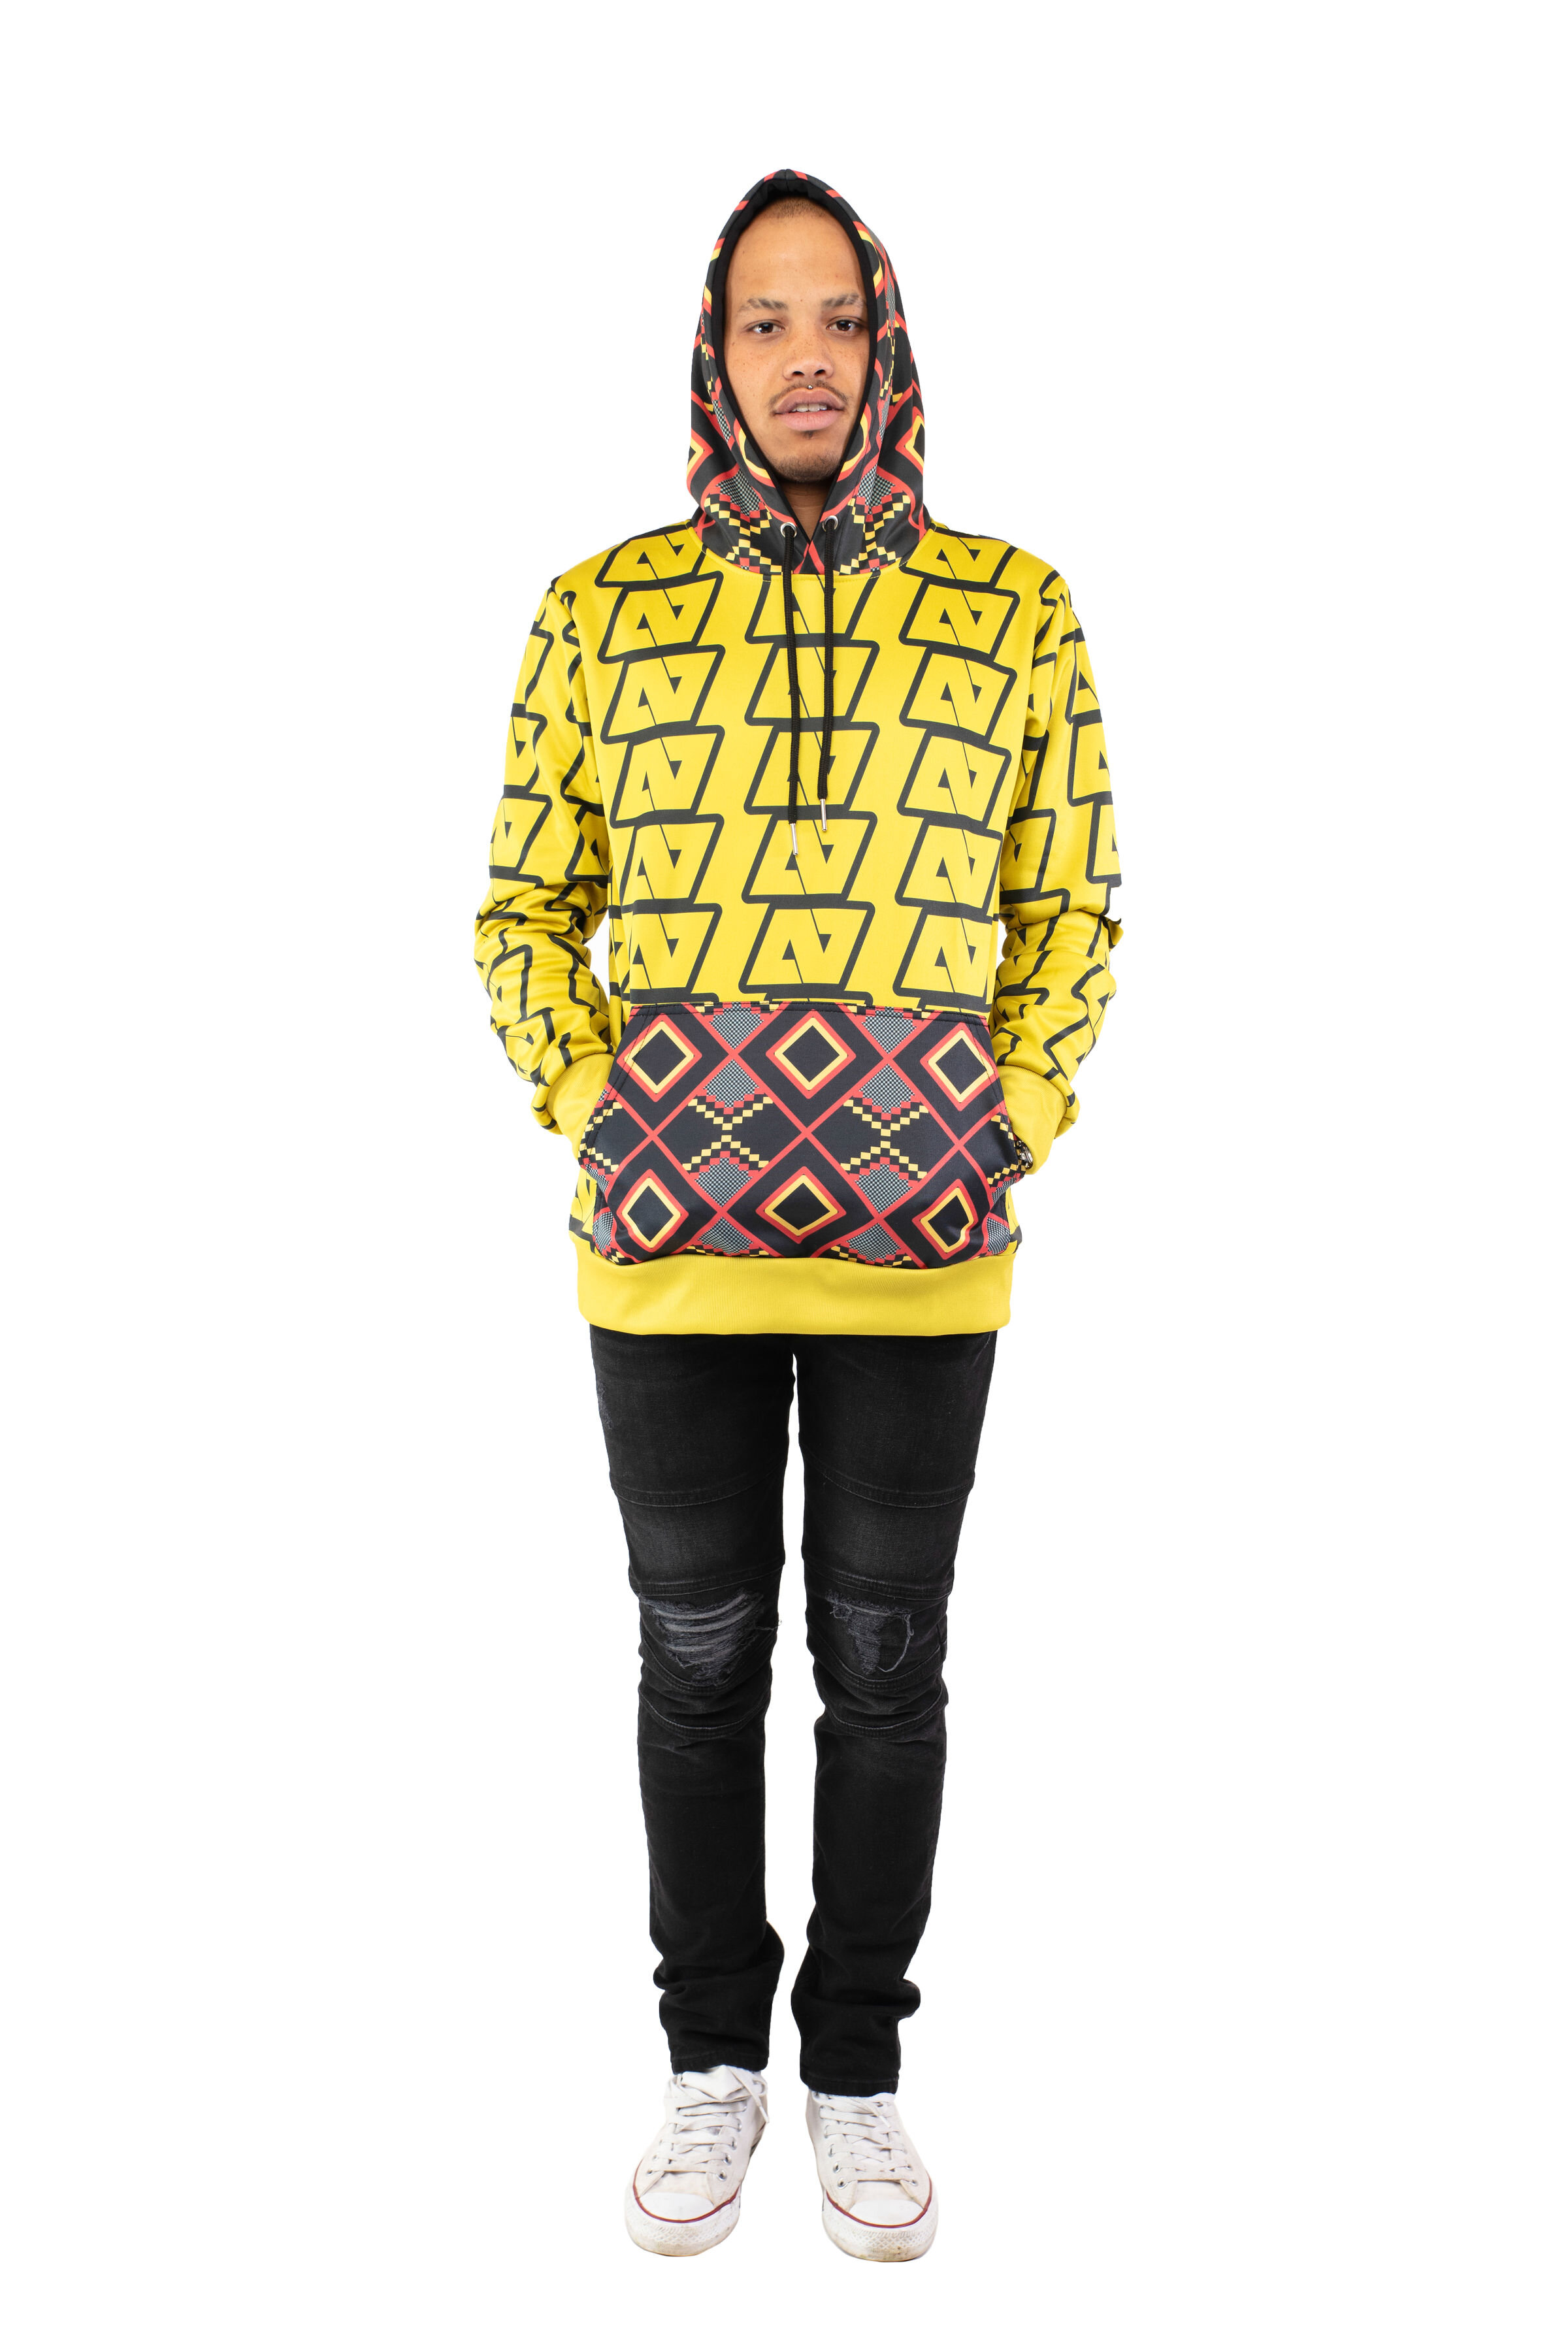 Store 2 — Afriqtee Clothing